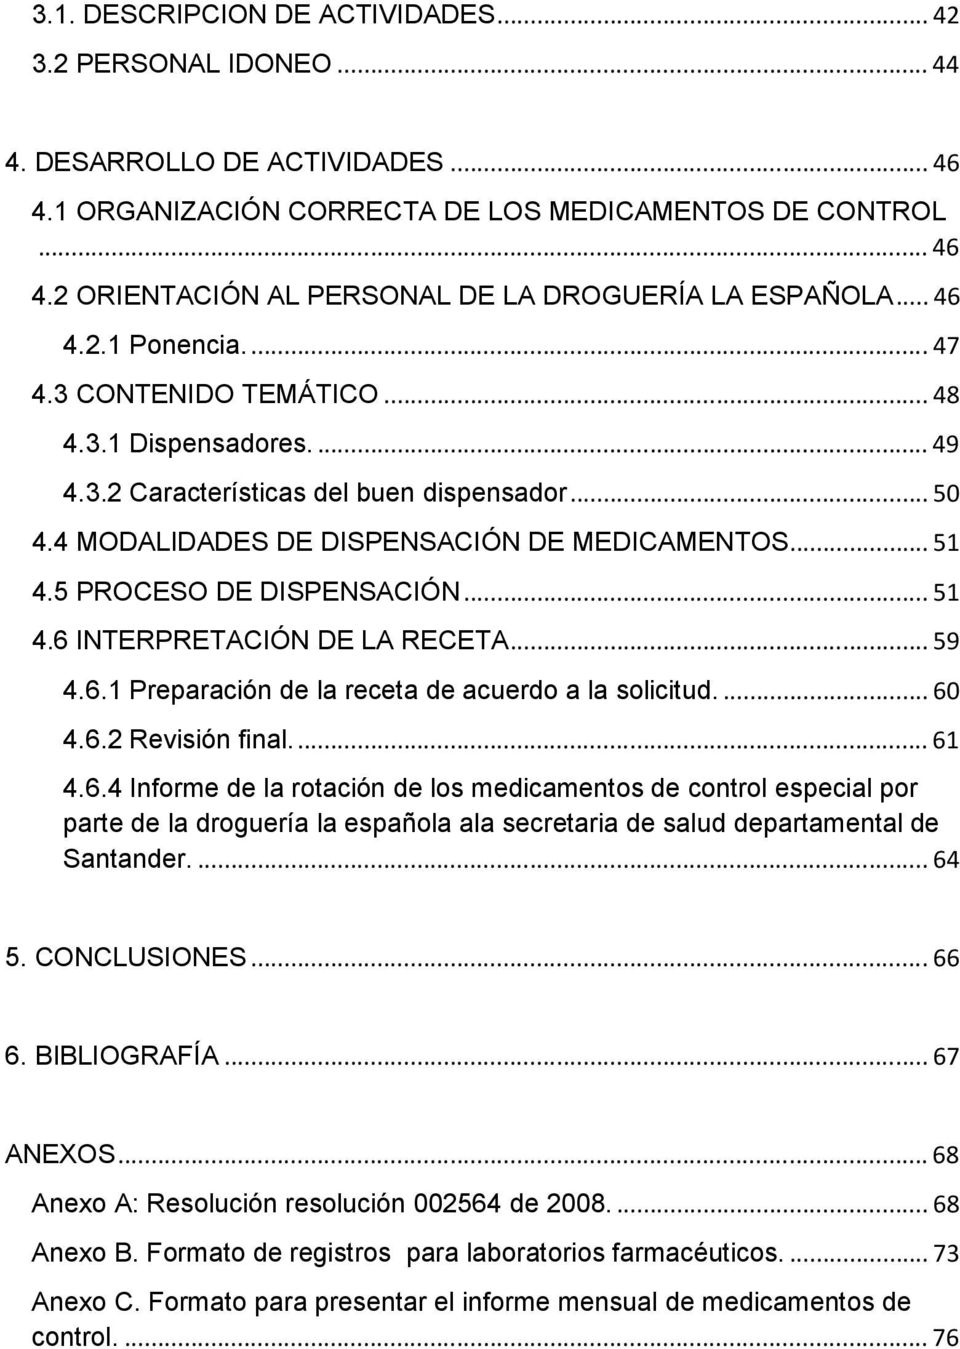 5 PROCESO DE DISPENSACIÓN... 51 4.6 INTERPRETACIÓN DE LA RECETA... 59 4.6.1 Preparación de la receta de acuerdo a la solicitud.... 60 4.6.2 Revisión final.... 61 4.6.4 Informe de la rotación de los medicamentos de control especial por parte de la droguería la española ala secretaria de salud departamental de Santander.